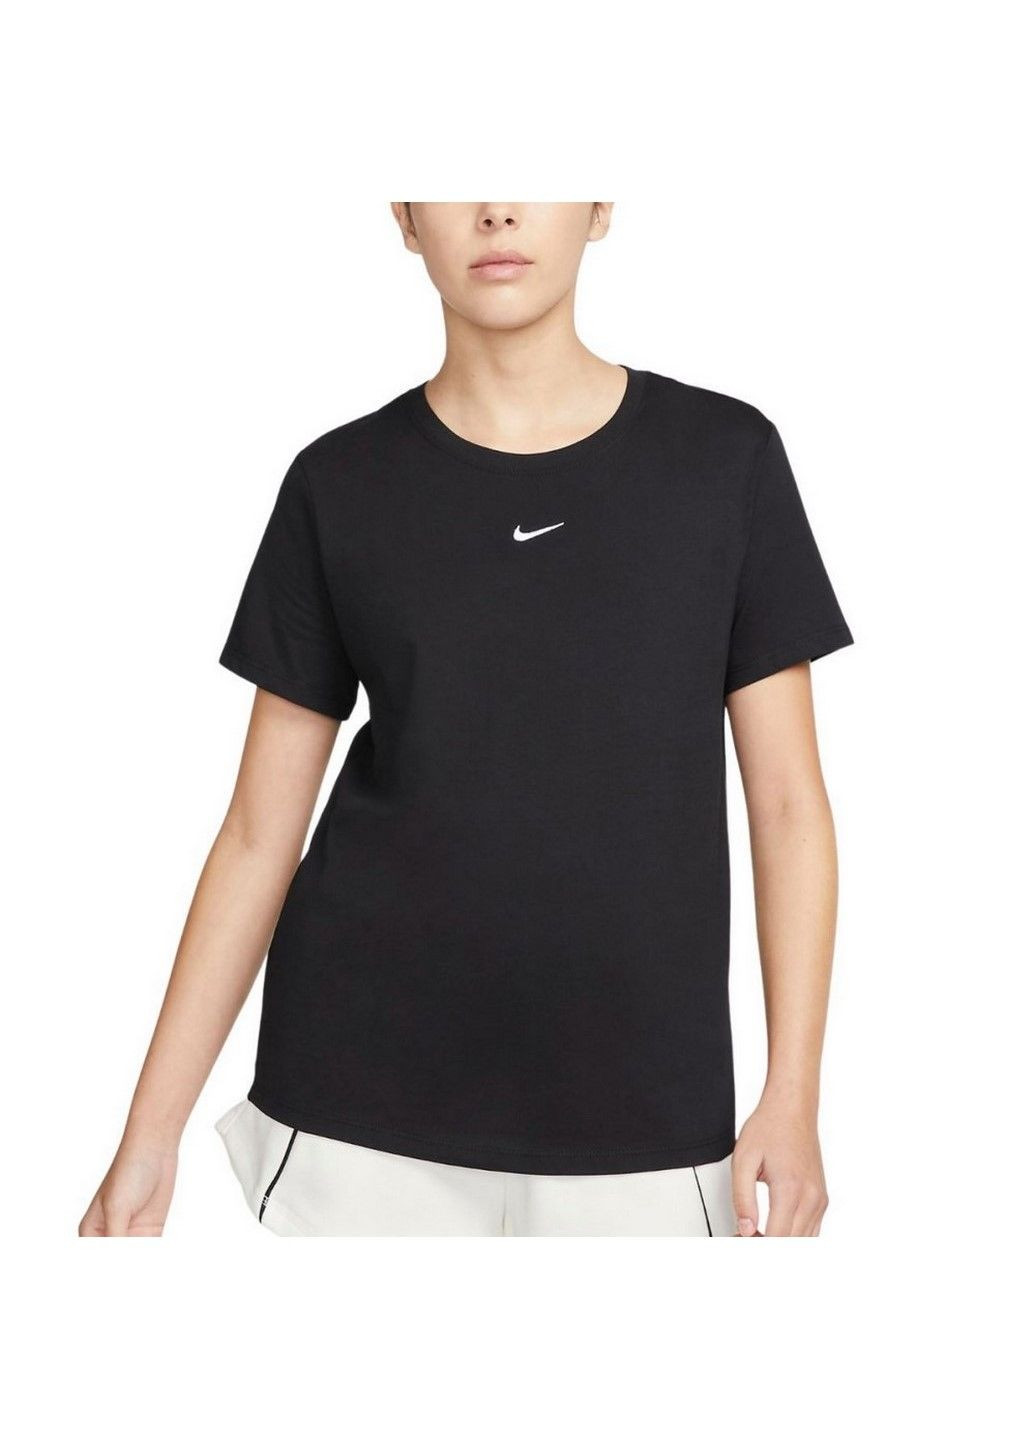 Черная летняя футболка w nsw tee essntl crew lbr dx7904-010 Nike